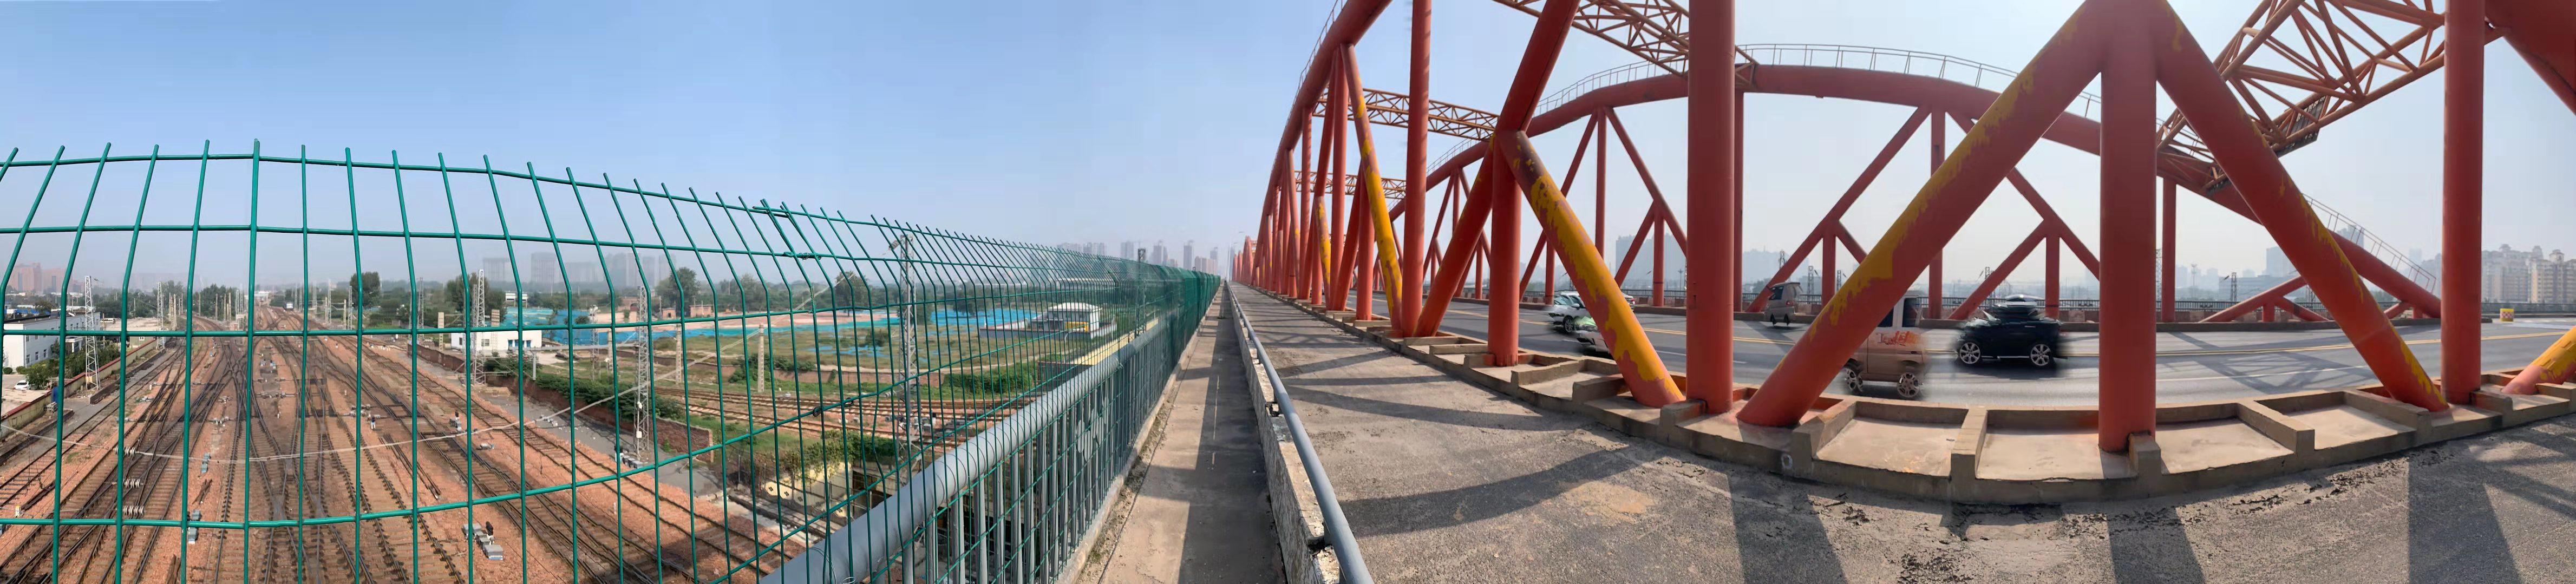 郑州北三环彩虹桥10月26日封闭 禁止一切车辆行人通行